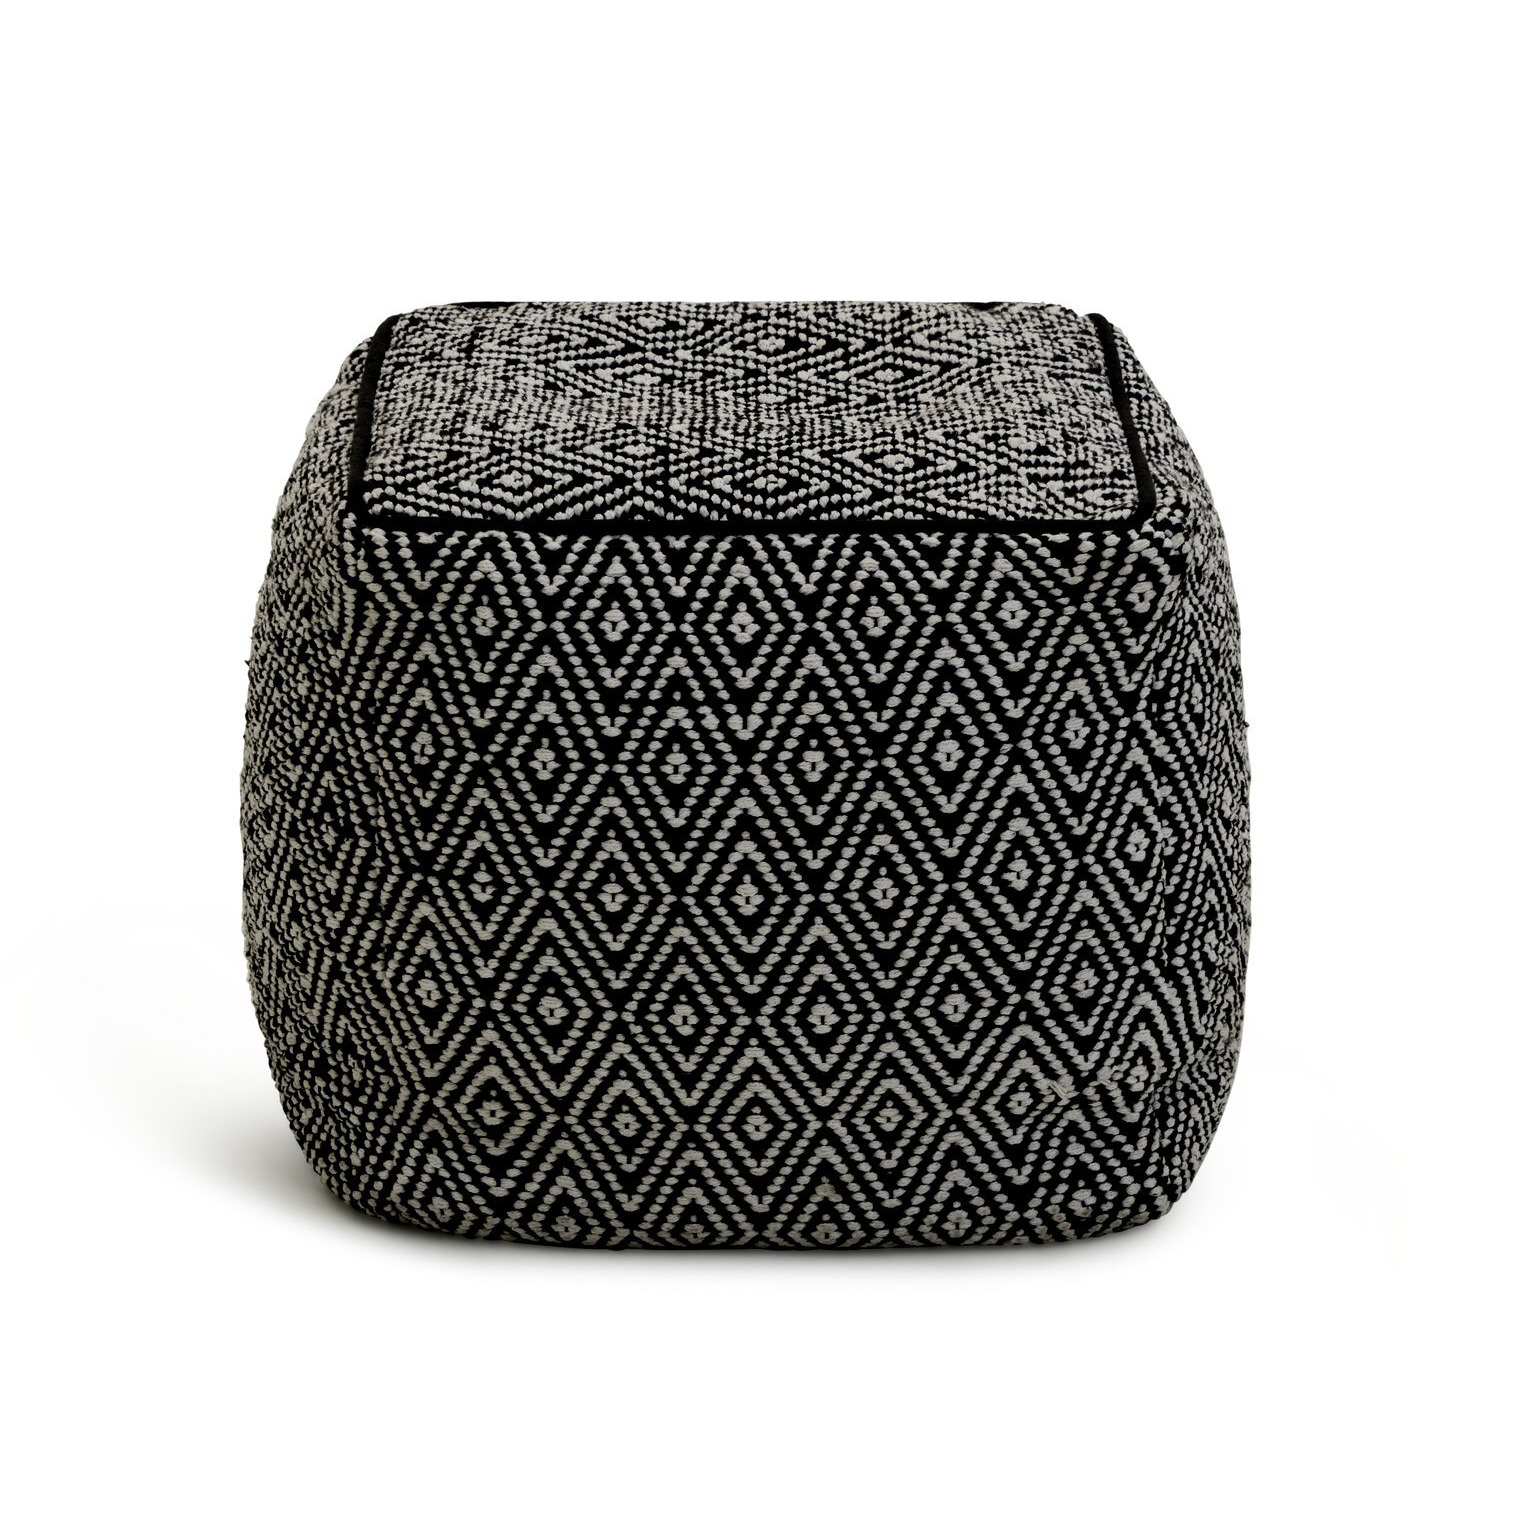 Kaikoo Durrie Cotton Footstool - Black & White - image 1